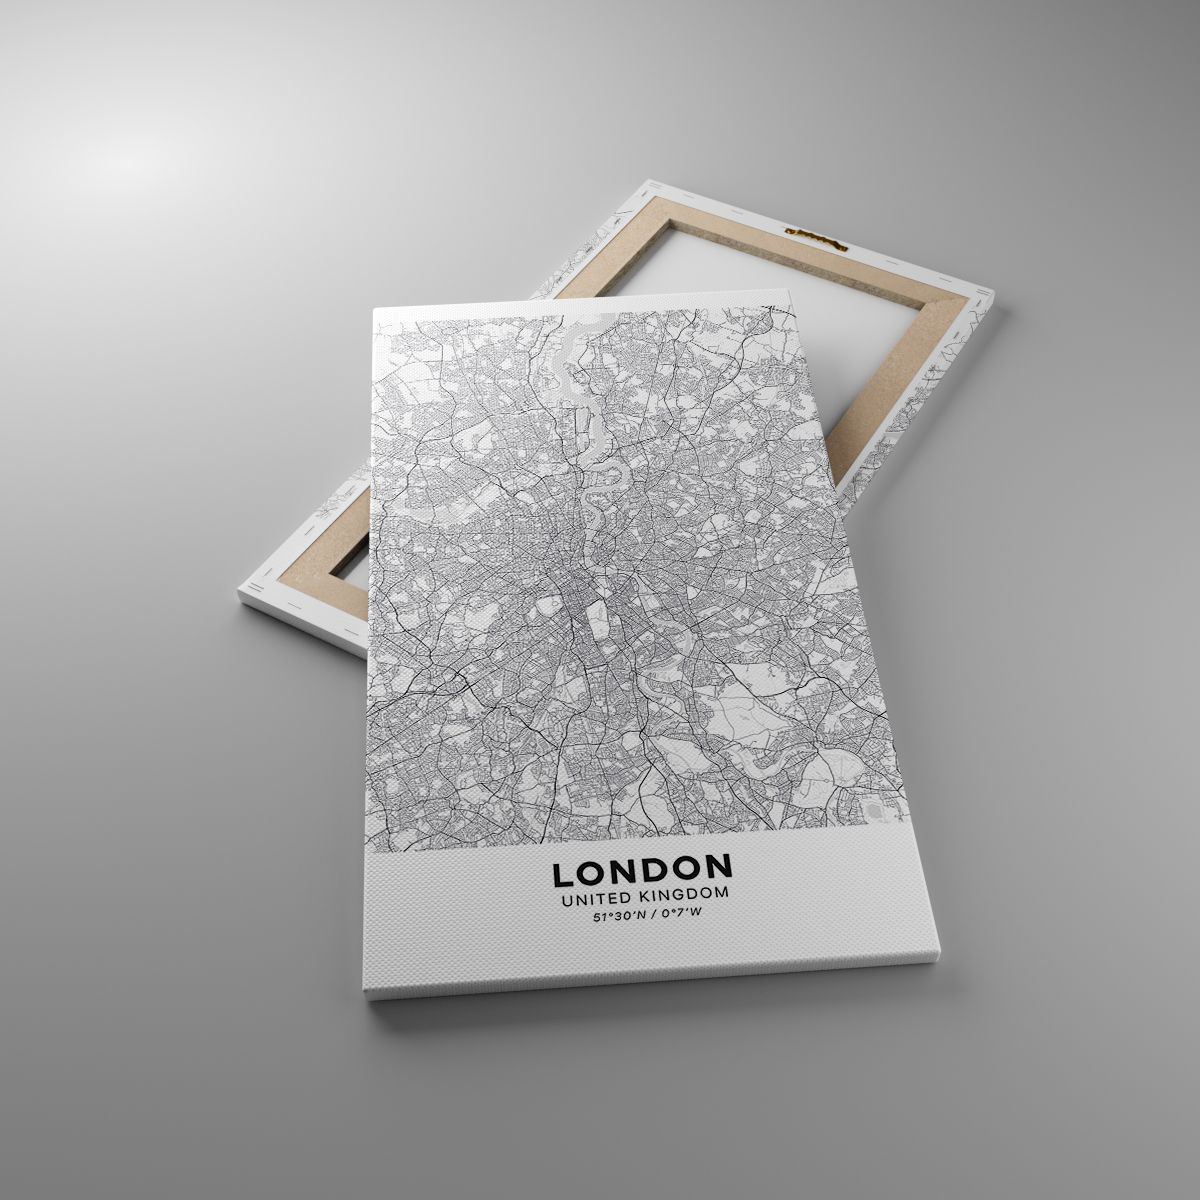 Cuadro Ciudad, Cuadro Mapa De La Ciudad, Cuadro Londres, Cuadro Gráficos, Cuadro Inglaterra